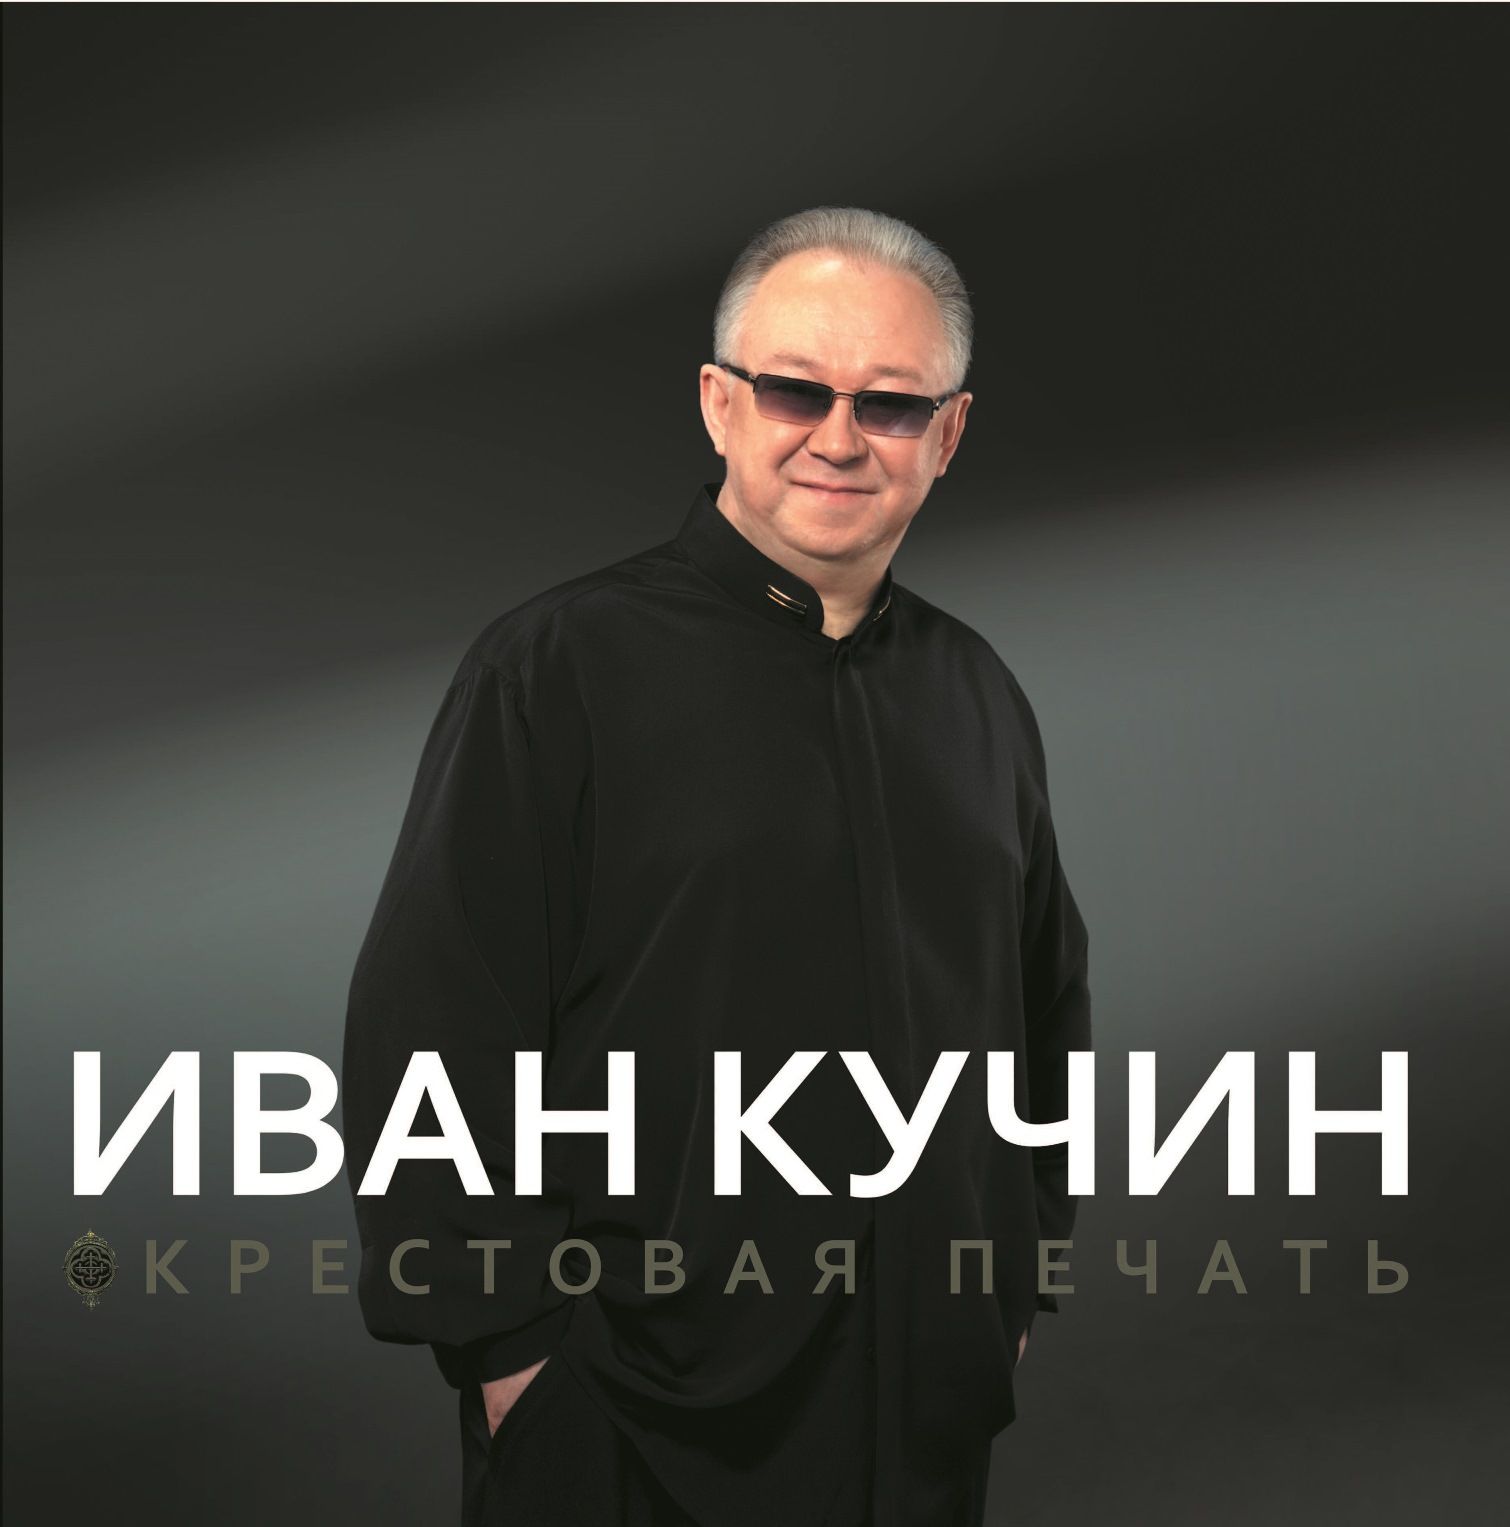 Иван Кучин – Крестовая печать (LP)